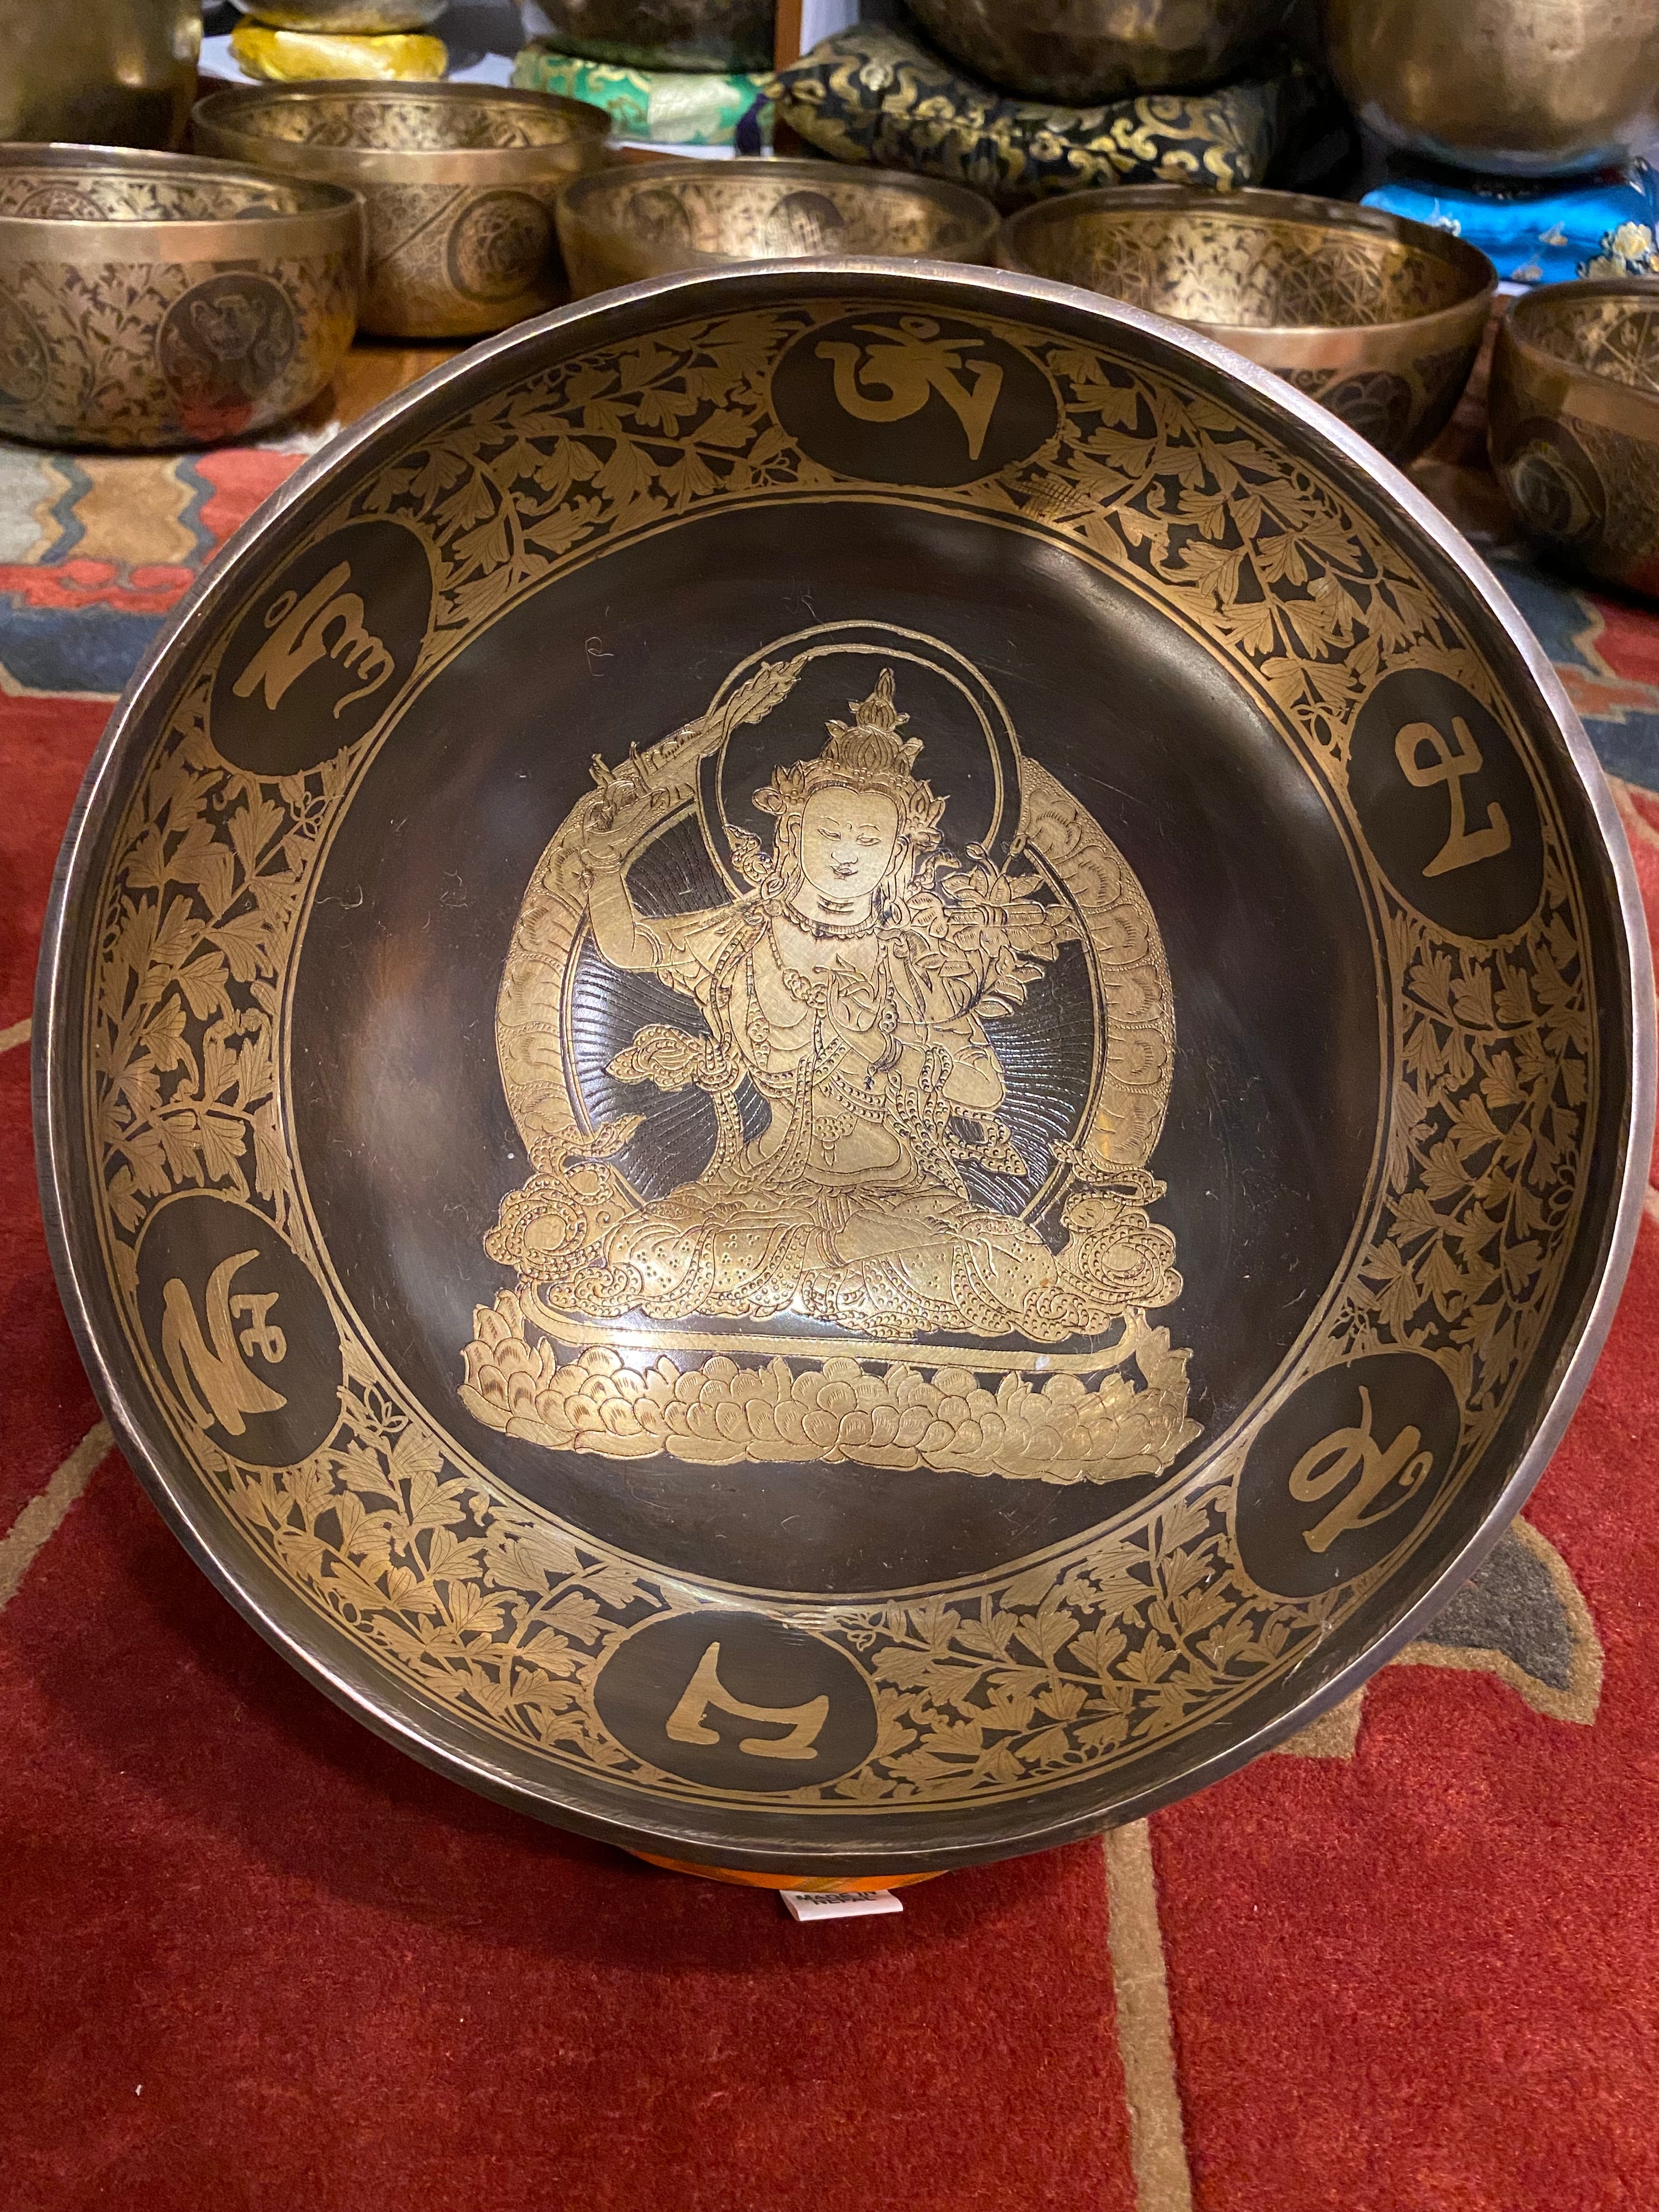 Handcrafted Tibetan Manjushree Carved Singing Bowl for meditation.